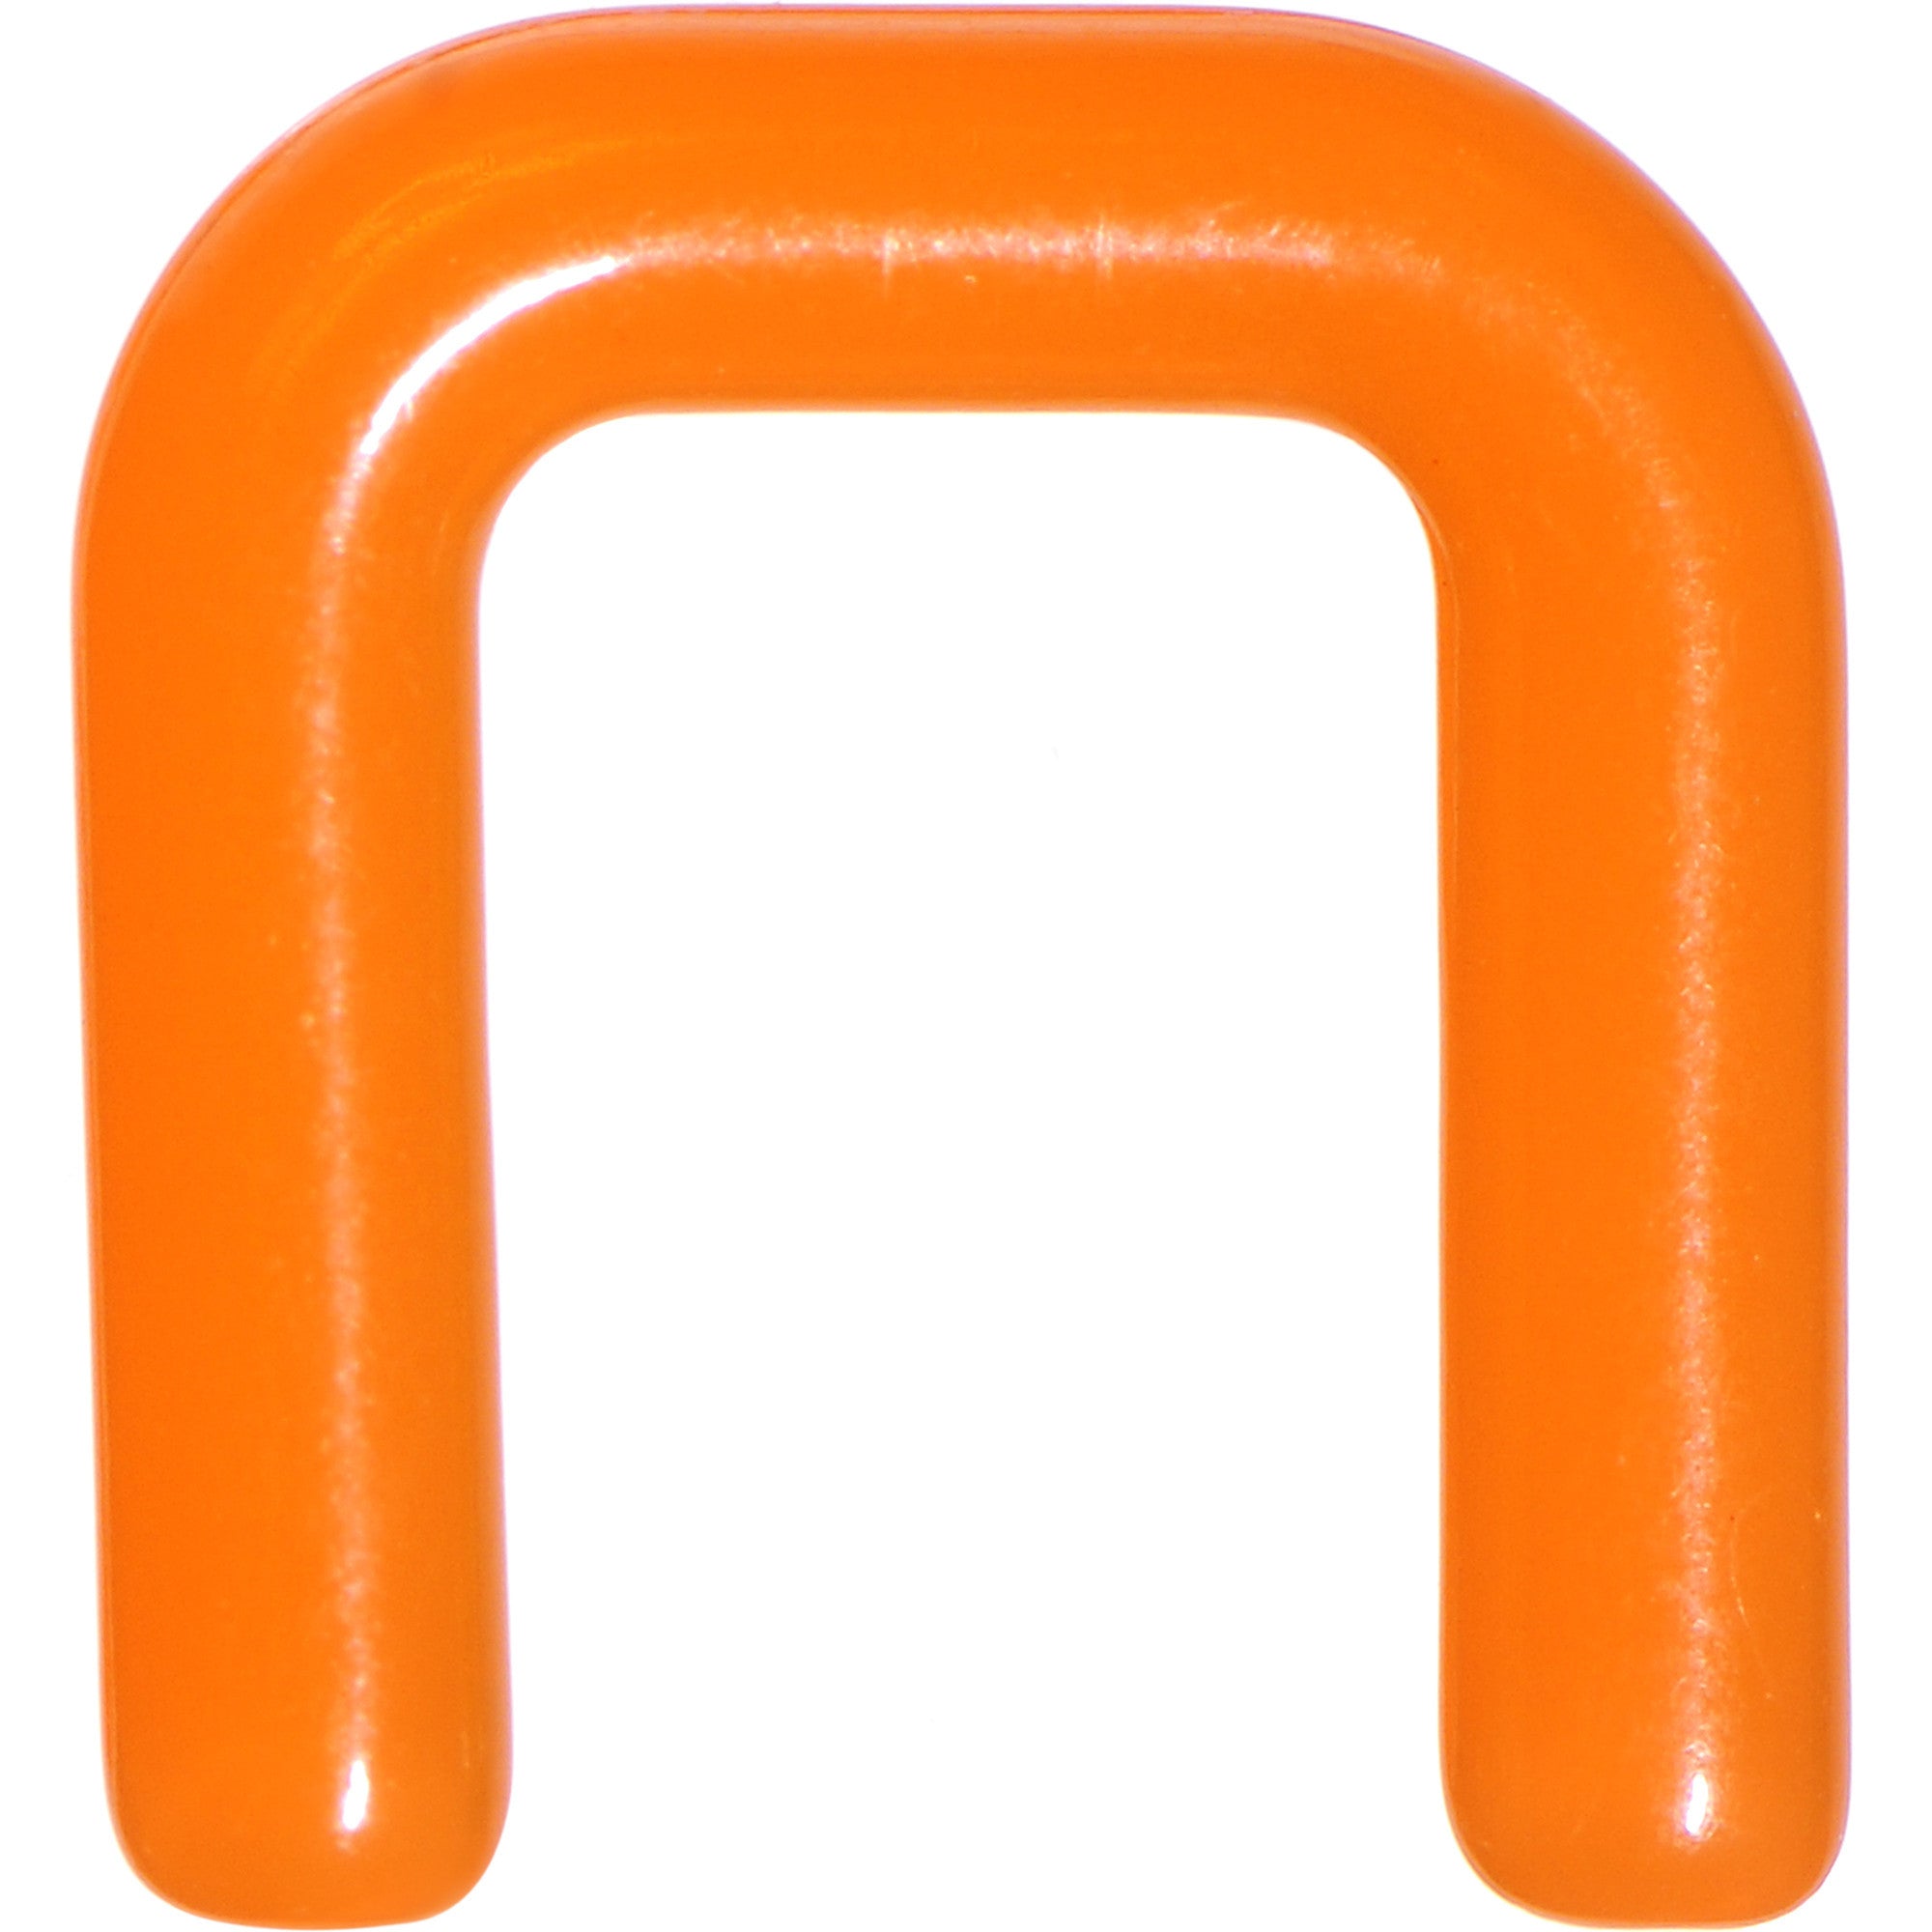 10 Gauge 1/2 Orange Flexible Bioplast Square Septum Retainer